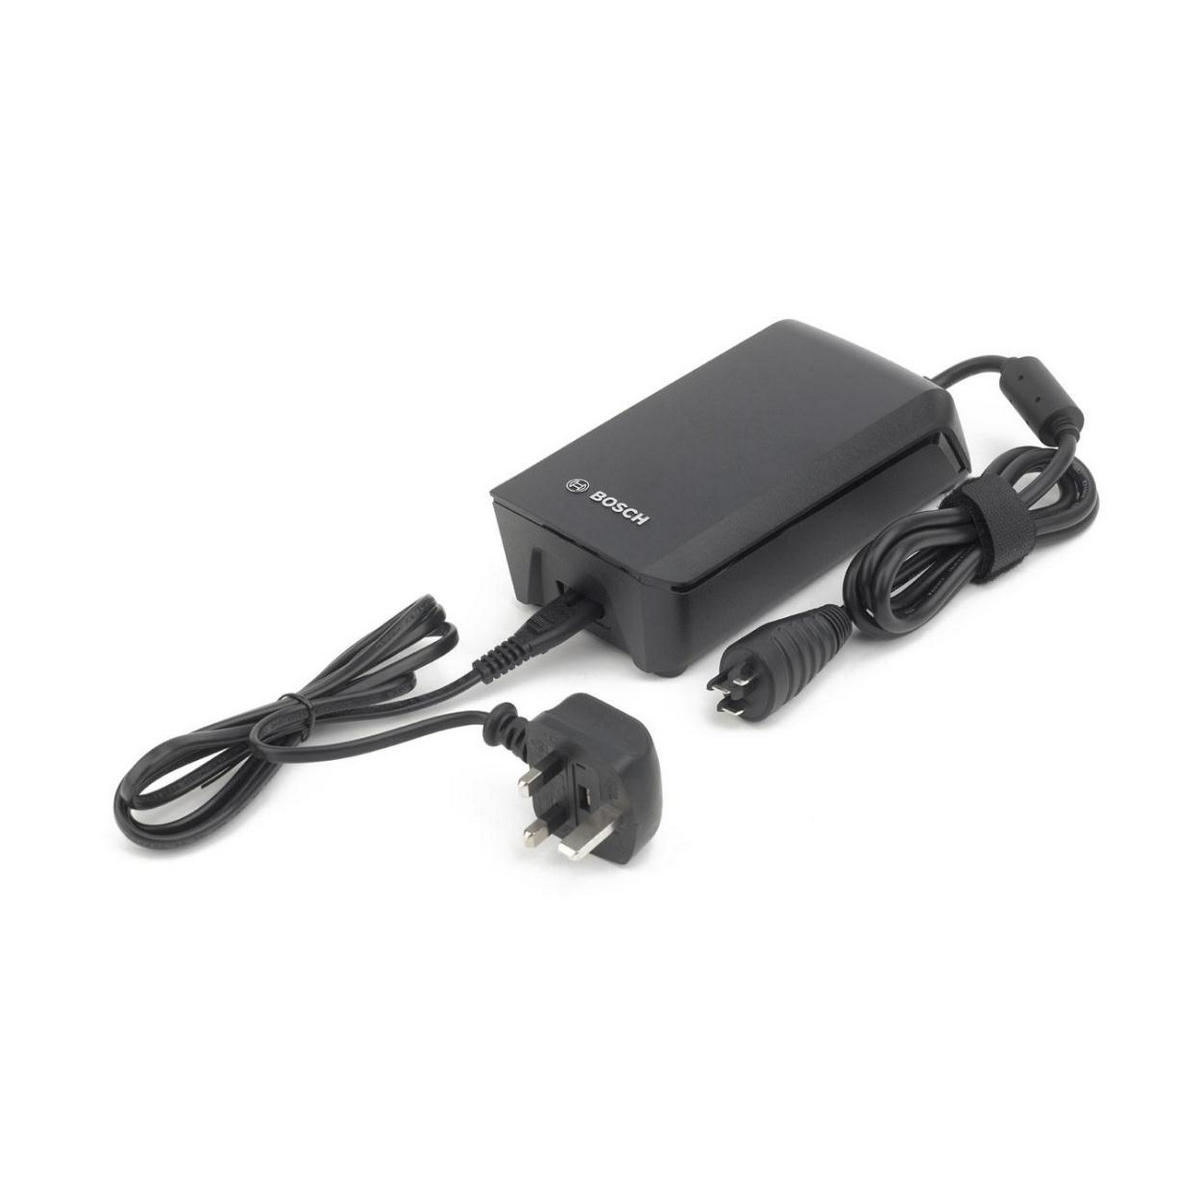 Cargador de baterias 6a fastcharger power cable uk 2019